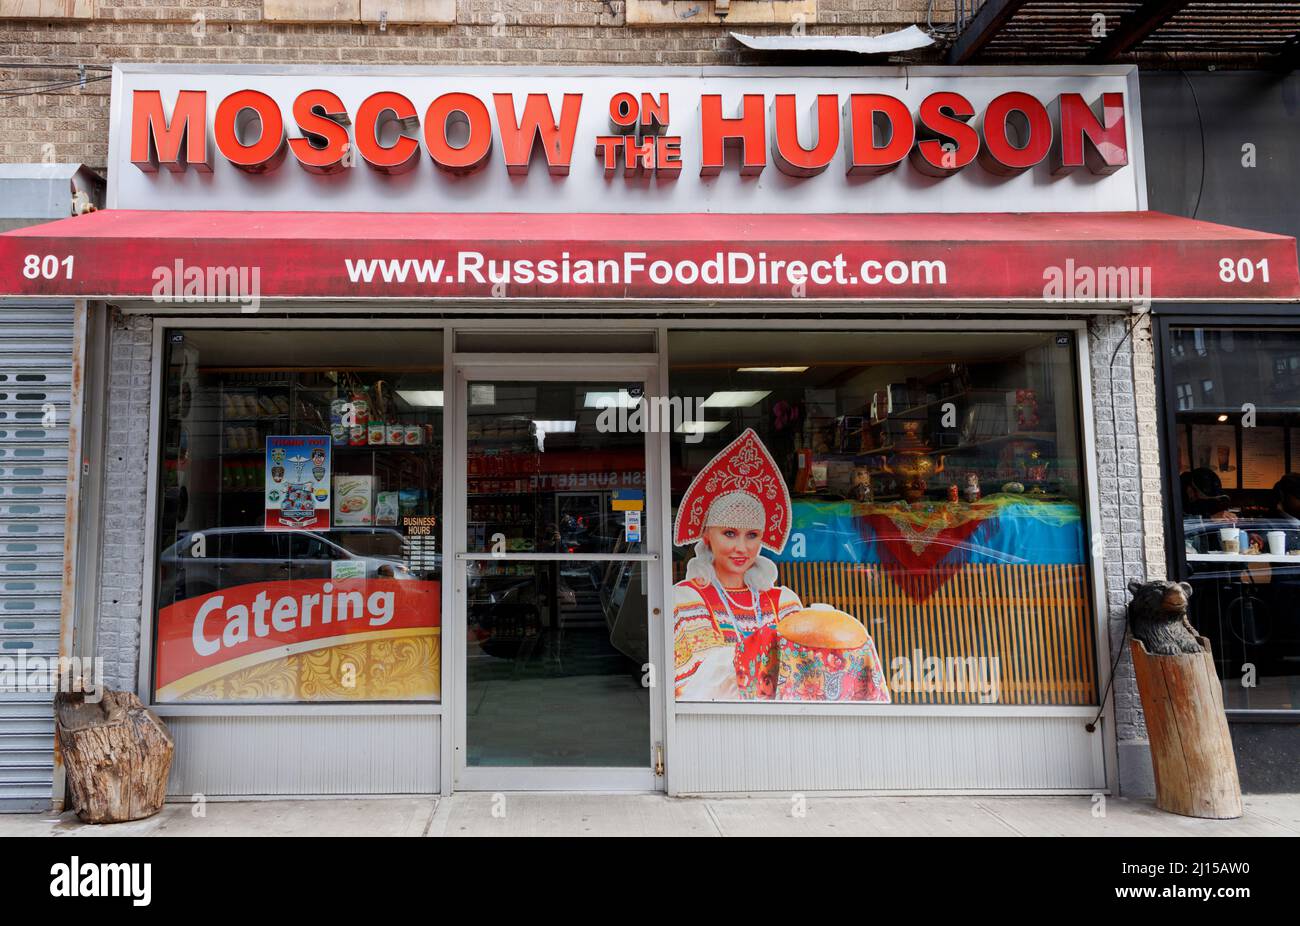 Moscú en el Hudson, una tienda de comida rusa ubicada en el 181st st. En la sección de Washington Heights del norte de Manhattan, Nueva York Foto de stock